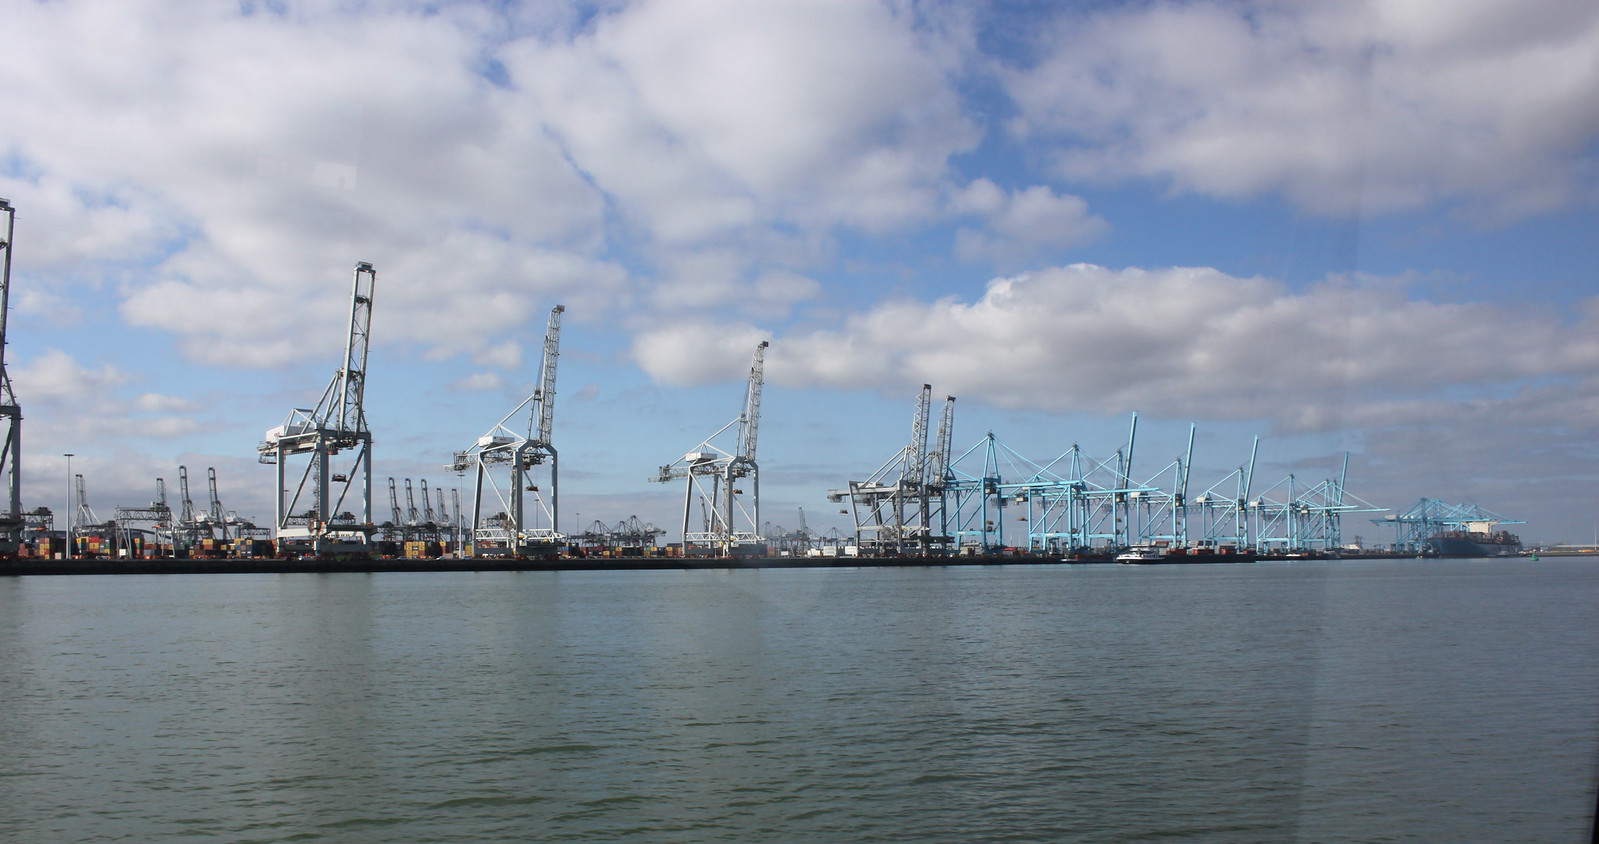 Rotterdamin satama on Euroopan suurin satama ja koko maailman mittapuun mukaan Shanghain ja Singaporen jälkeen sijalla kolme. Rahtia tuon sataman kautta kulkee vuosittain n. 430 milj. tonnia.